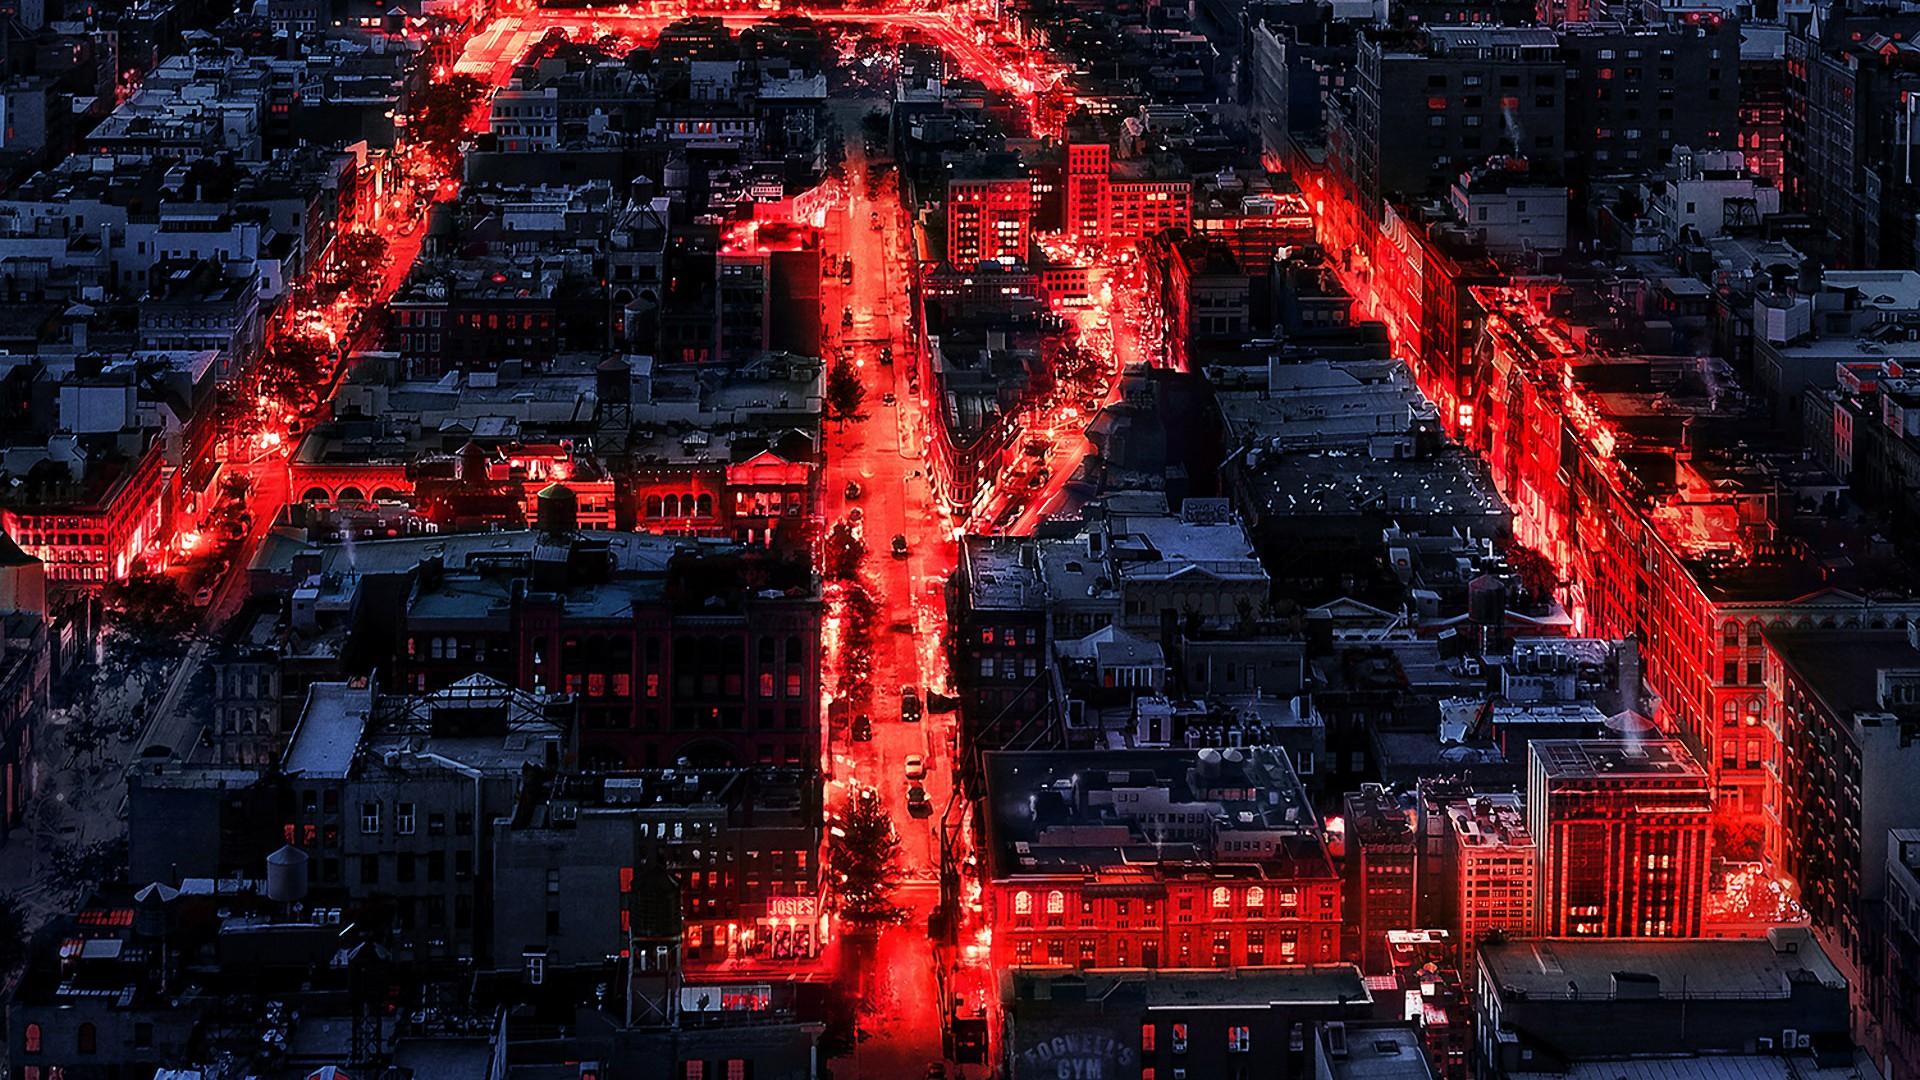 Daredevil Season 3 Poster Wallpapers